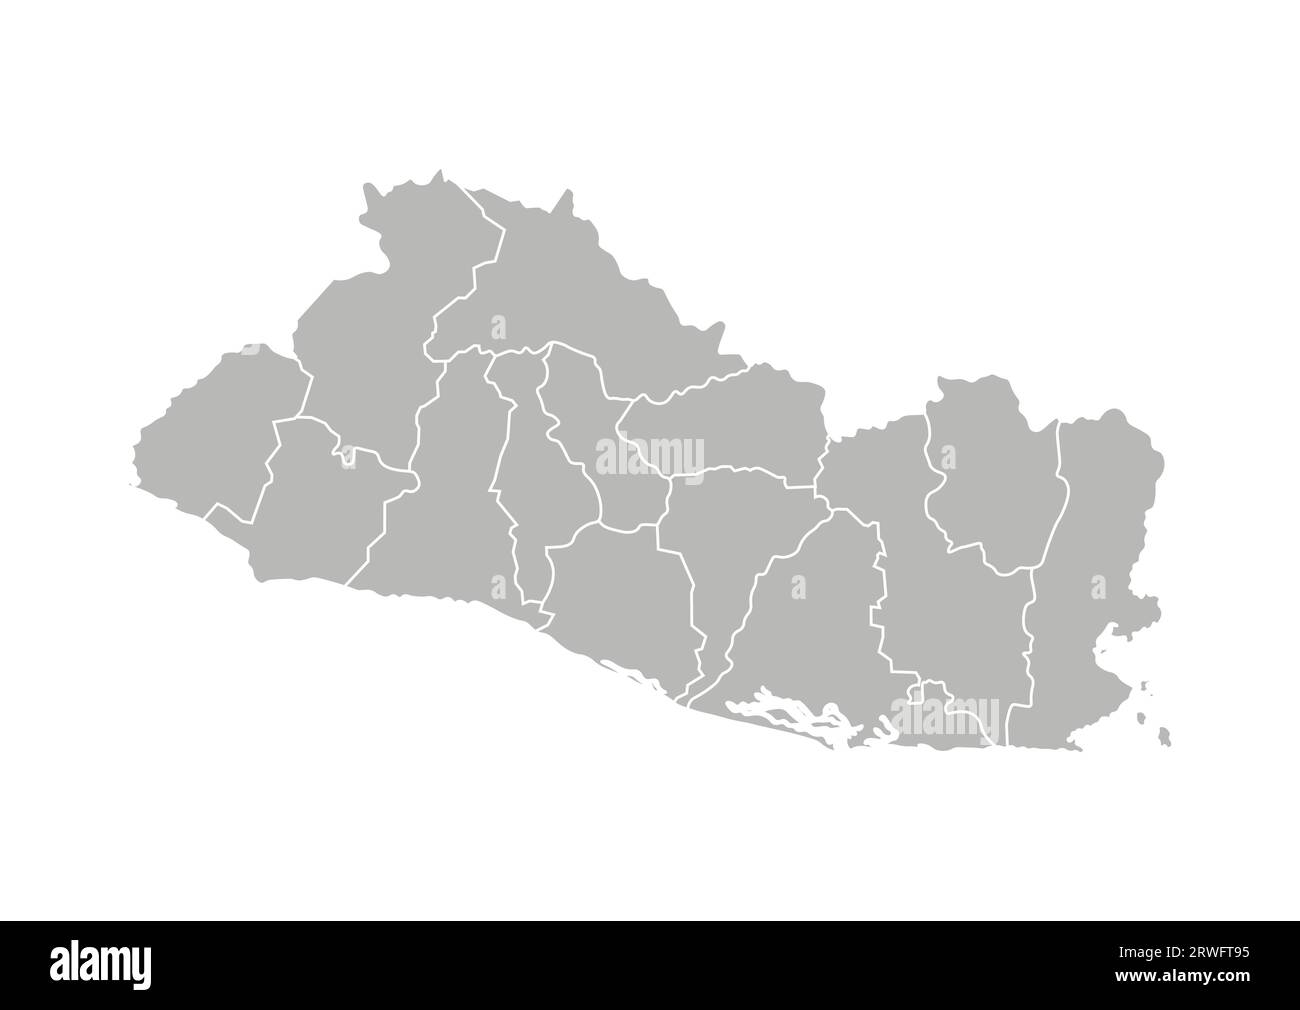 Illustrazione vettoriale isolata della mappa amministrativa semplificata di El Salvador. Confini dei dipartimenti (regioni). Silhouette grigie. Contorno bianco. Illustrazione Vettoriale